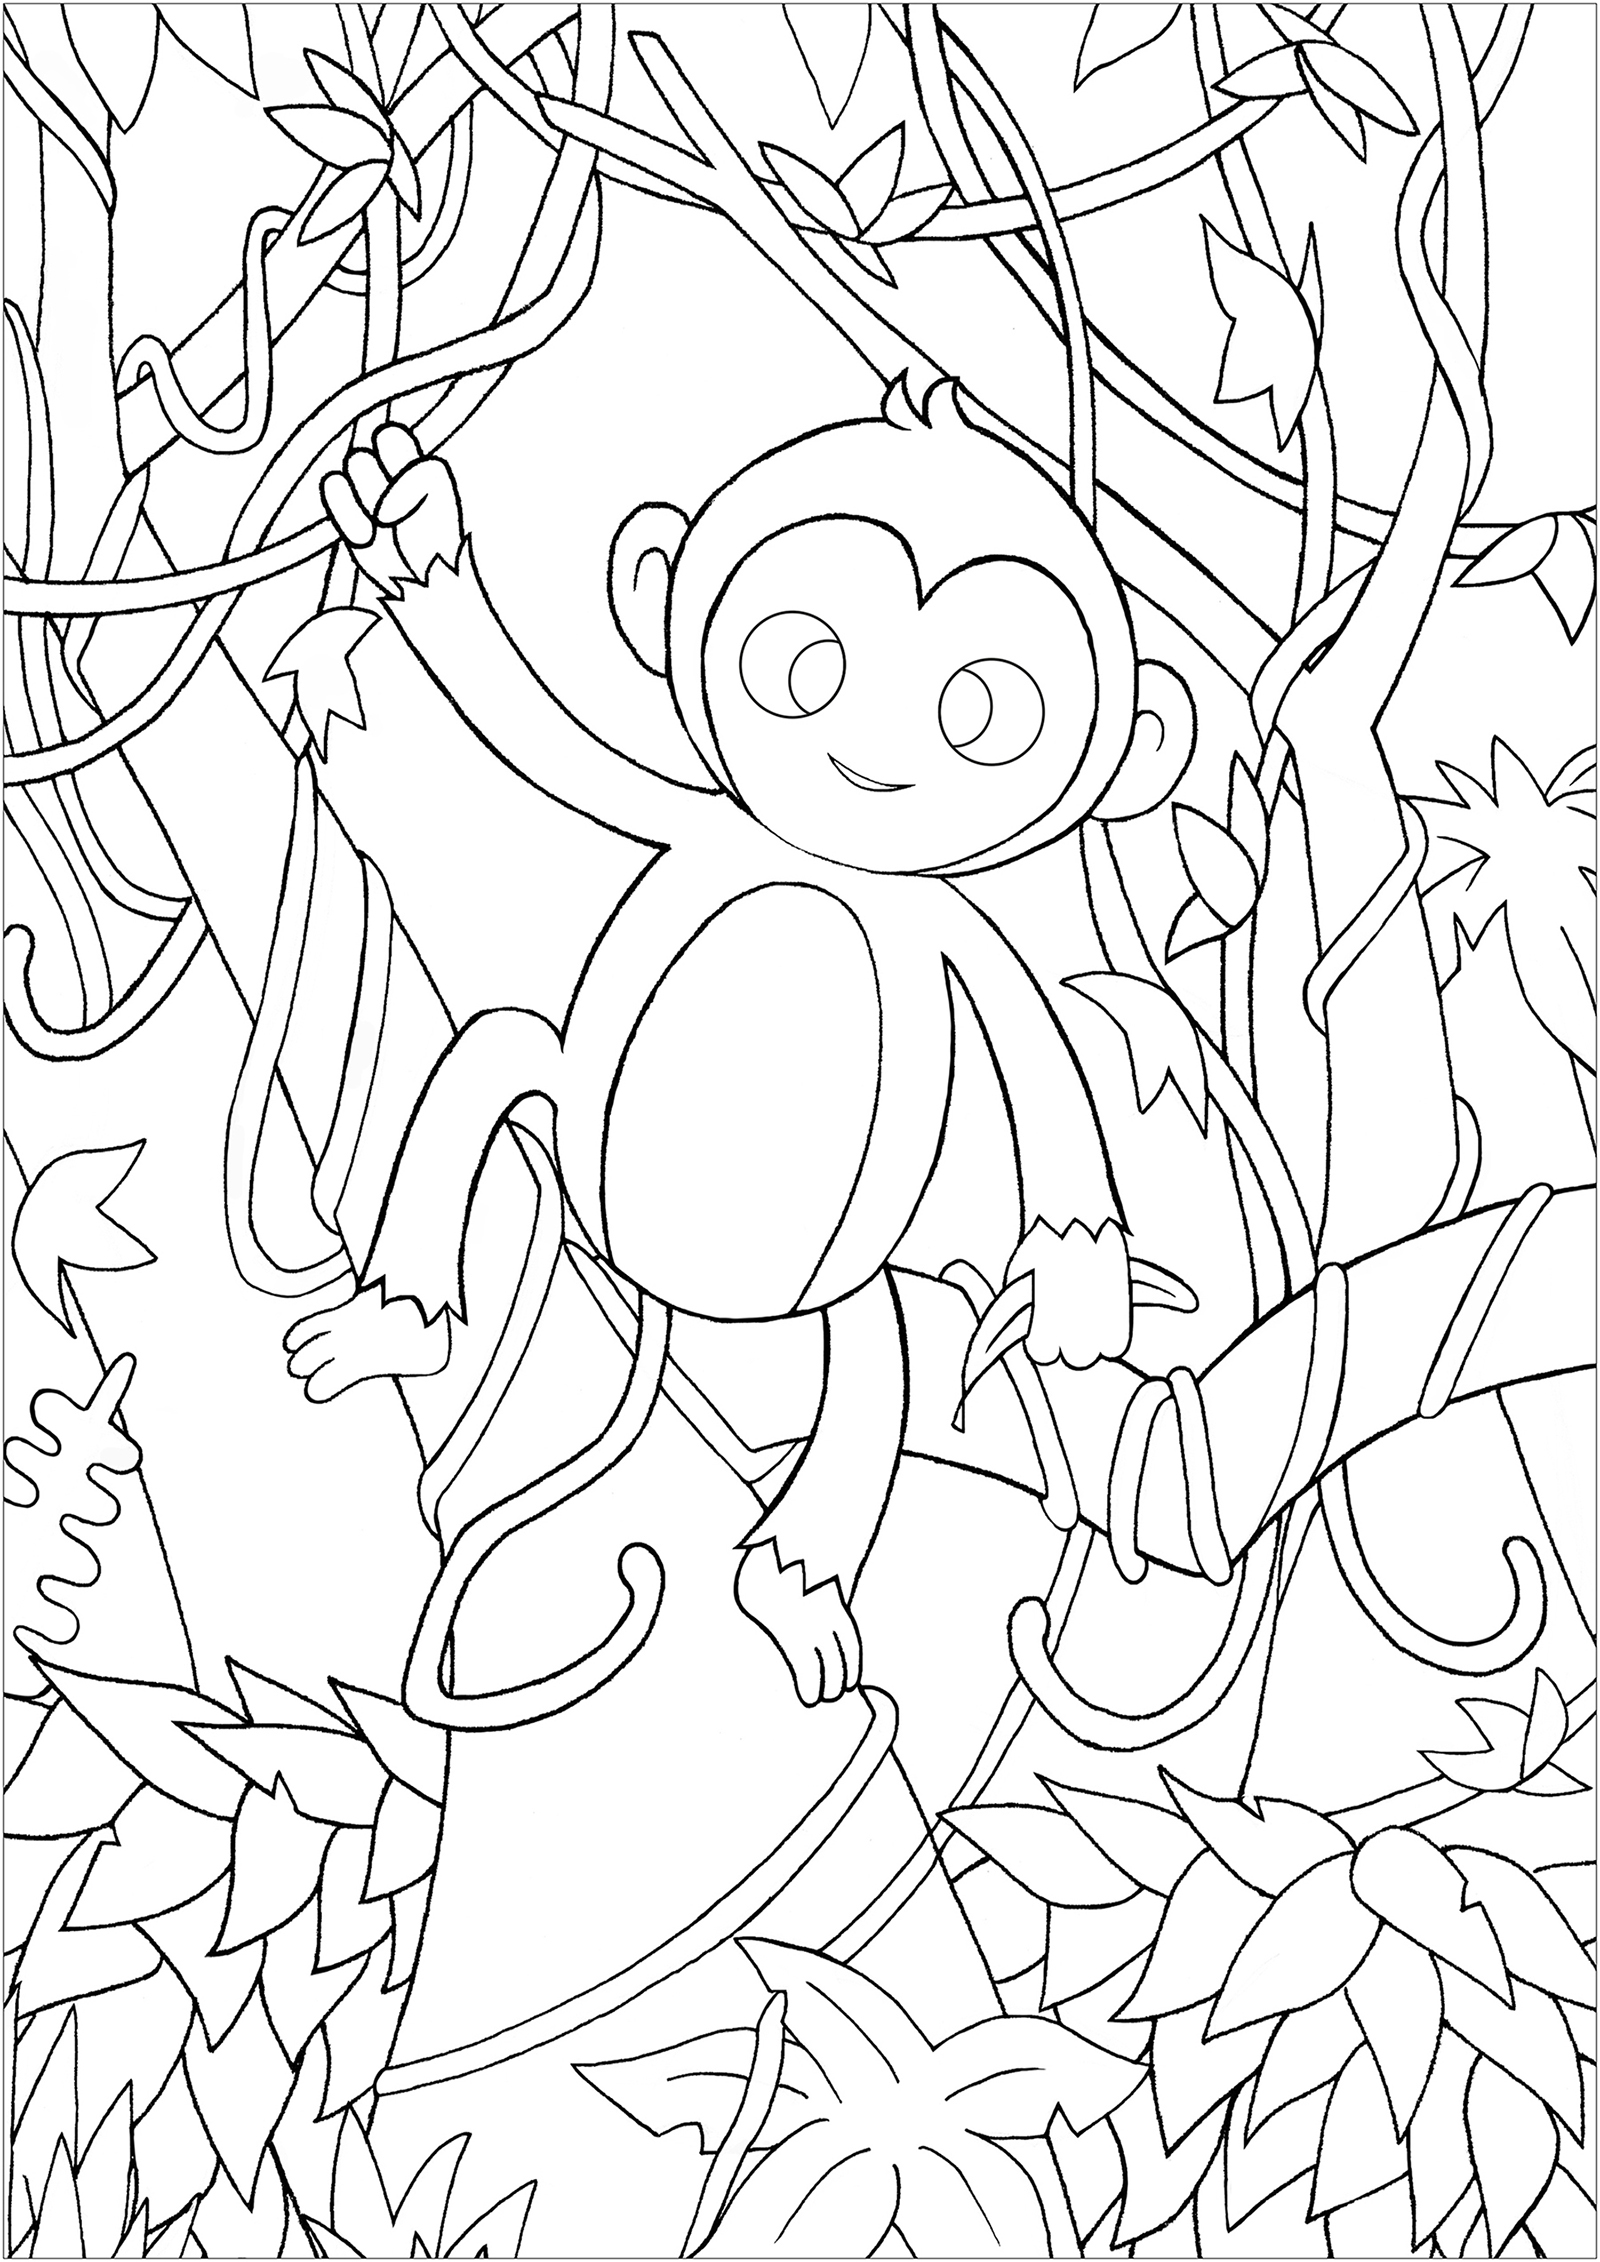 Colorea a este simpático mono en el bosque, caminando de liana en liana